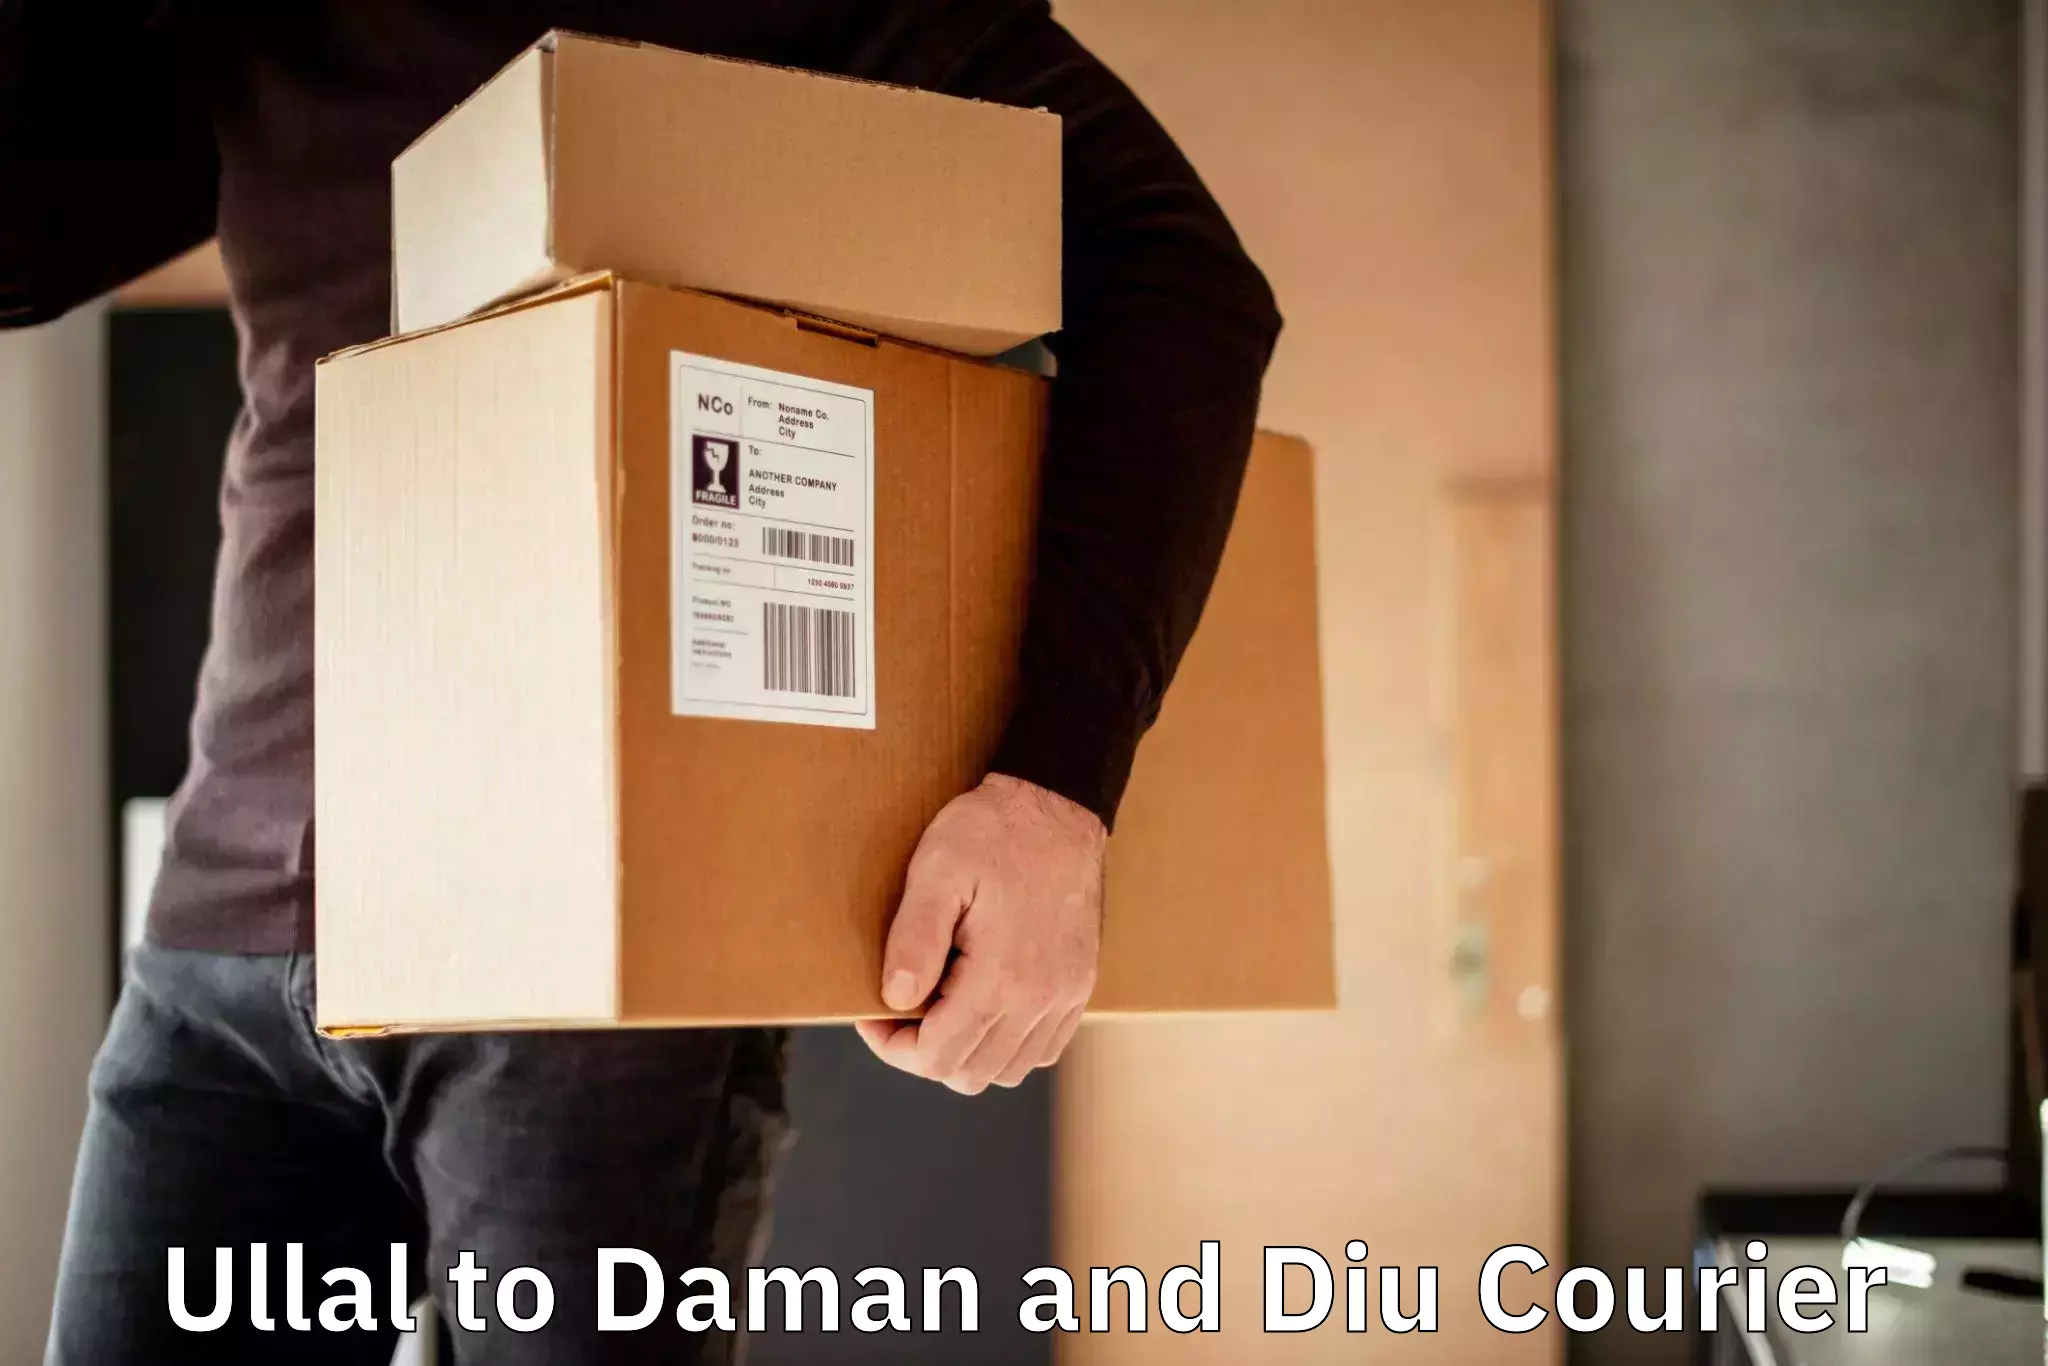 Courier app Ullal to Daman and Diu